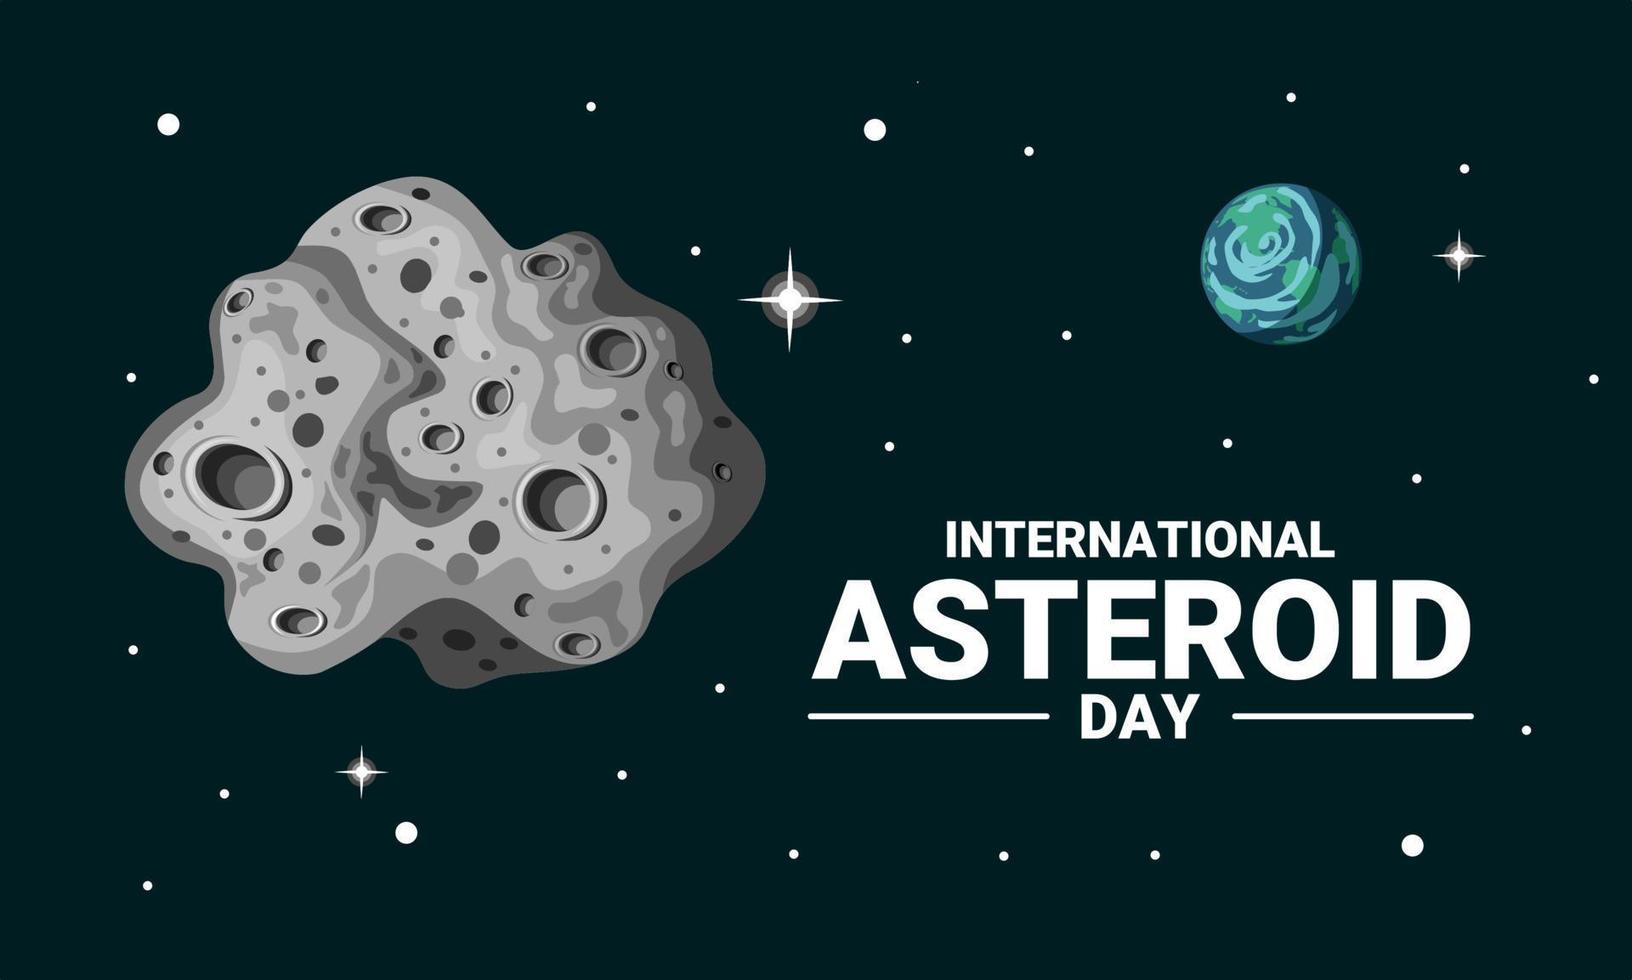 illustrazione vettoriale di un asteroide nello spazio, con terra e stelle sullo sfondo, come banner o poster, giornata internazionale degli asteroidi.